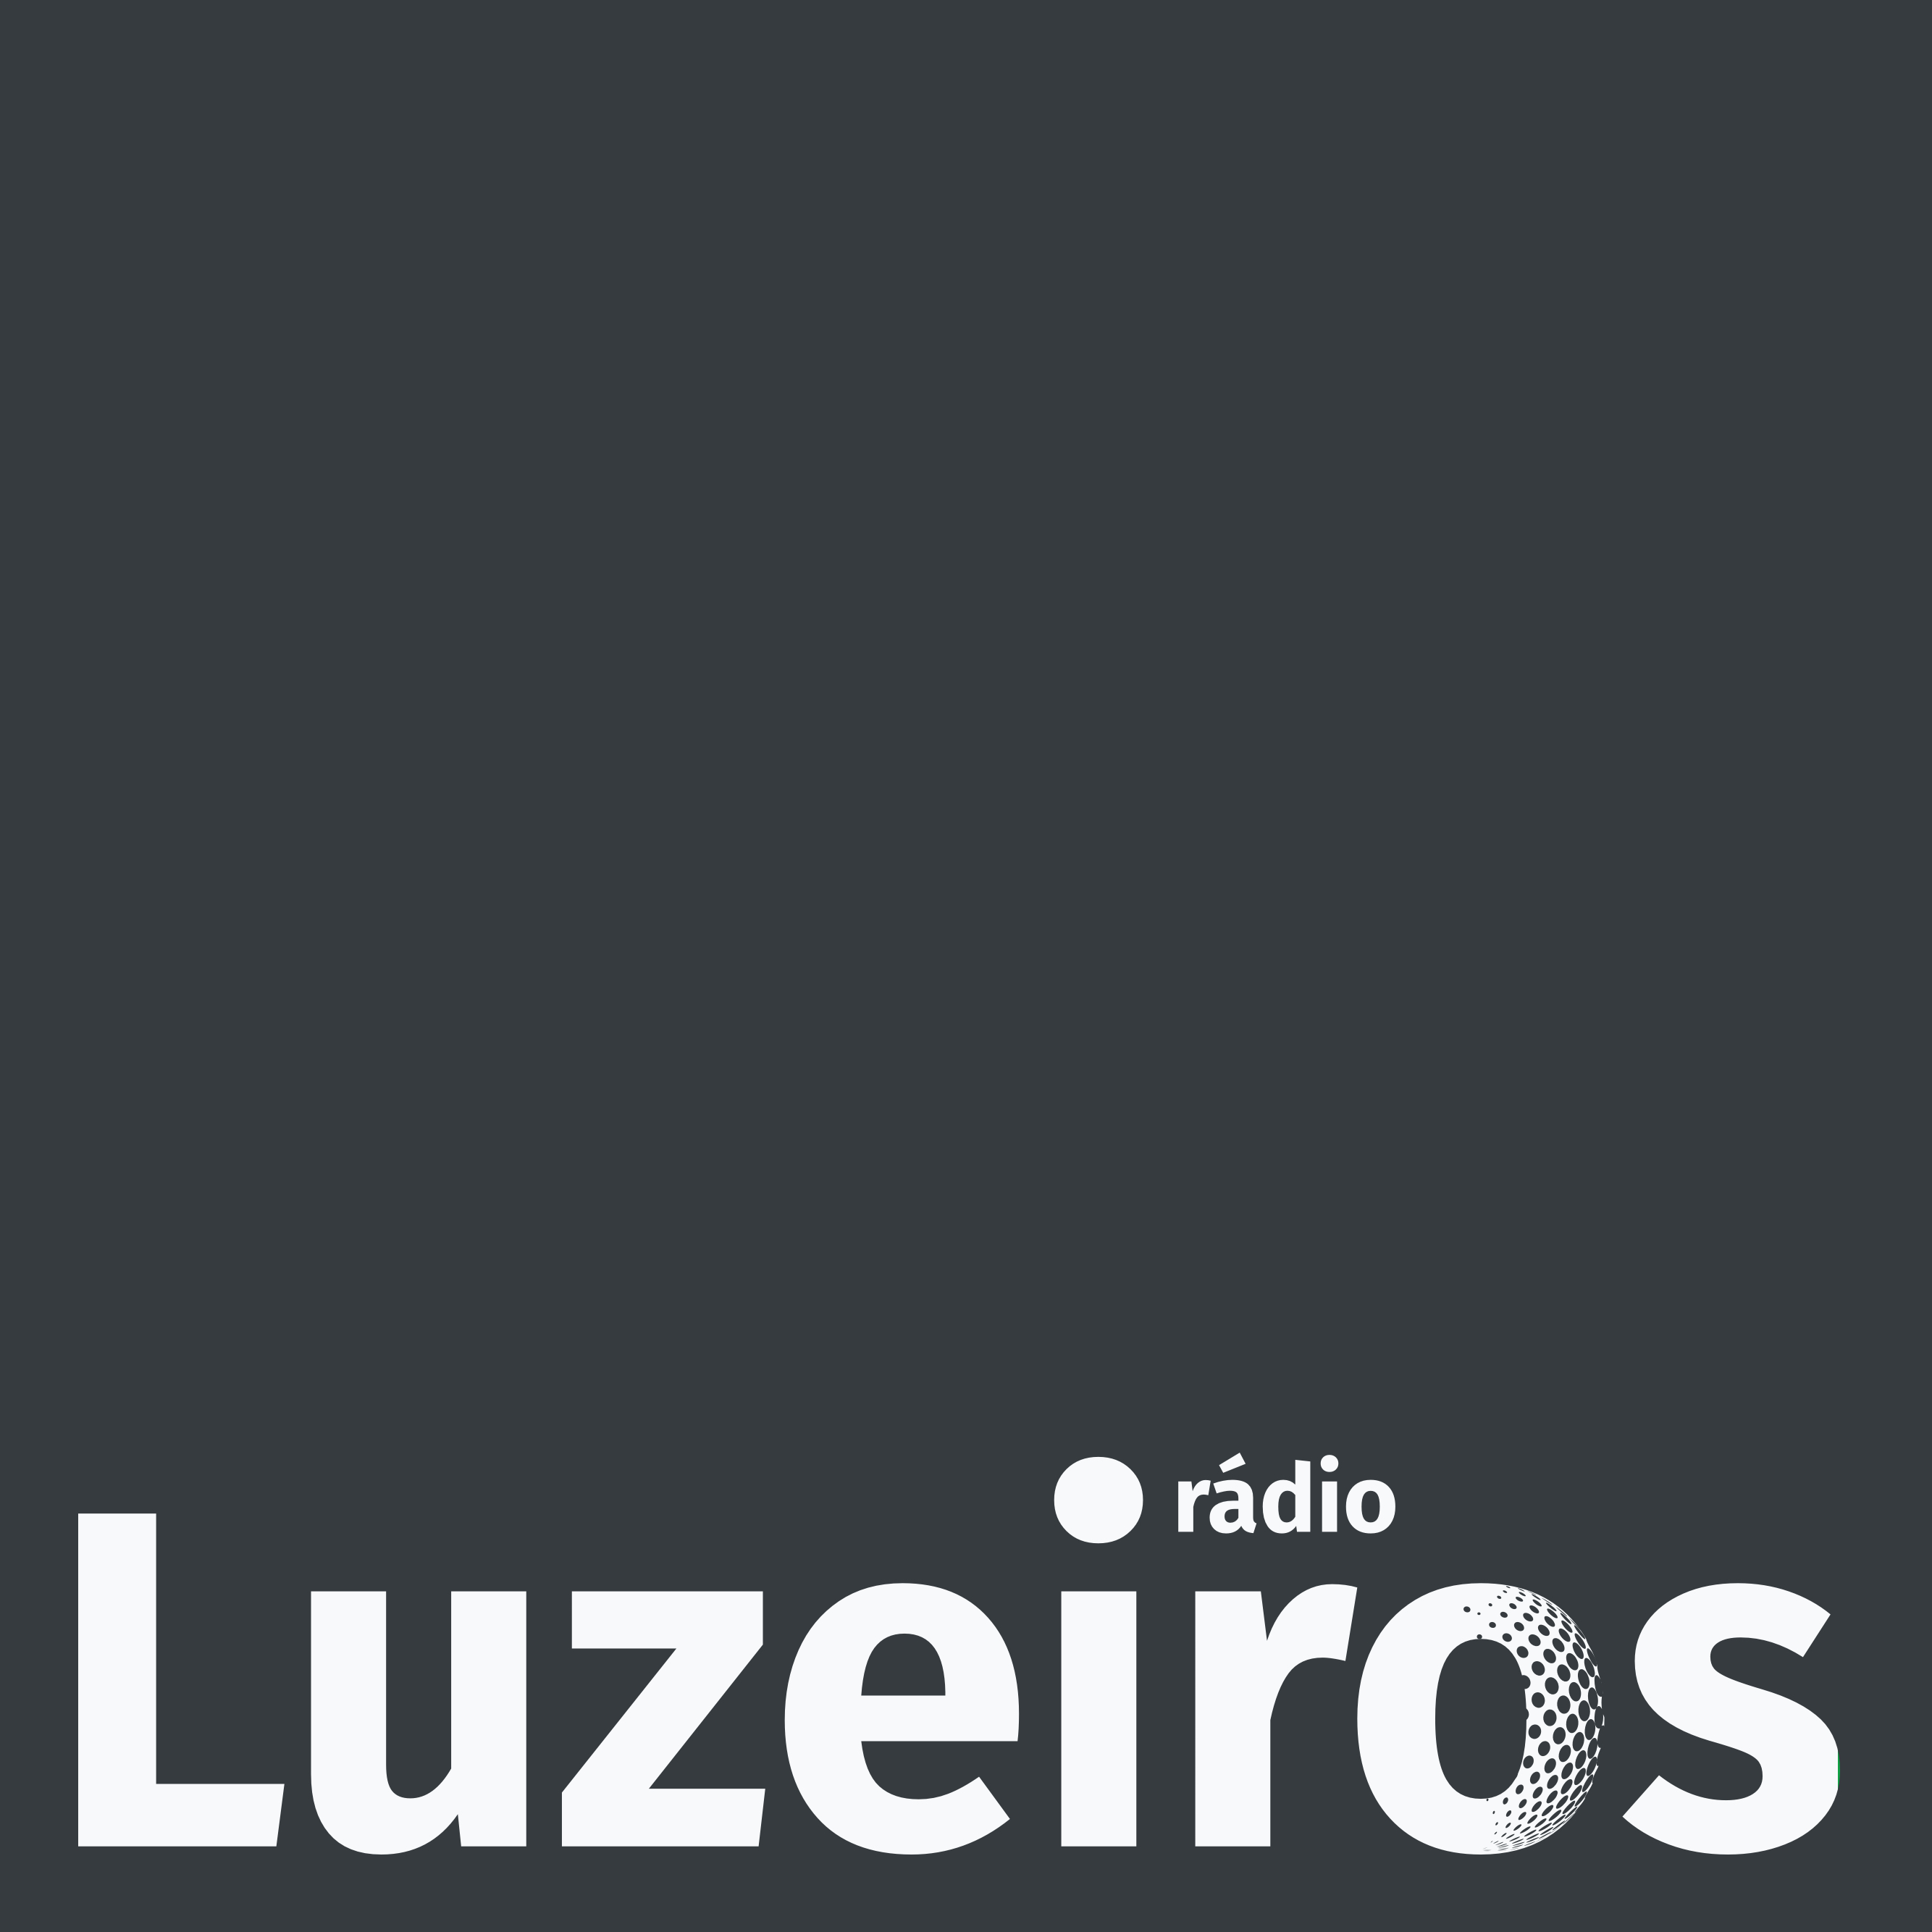 Radio Luzeiros